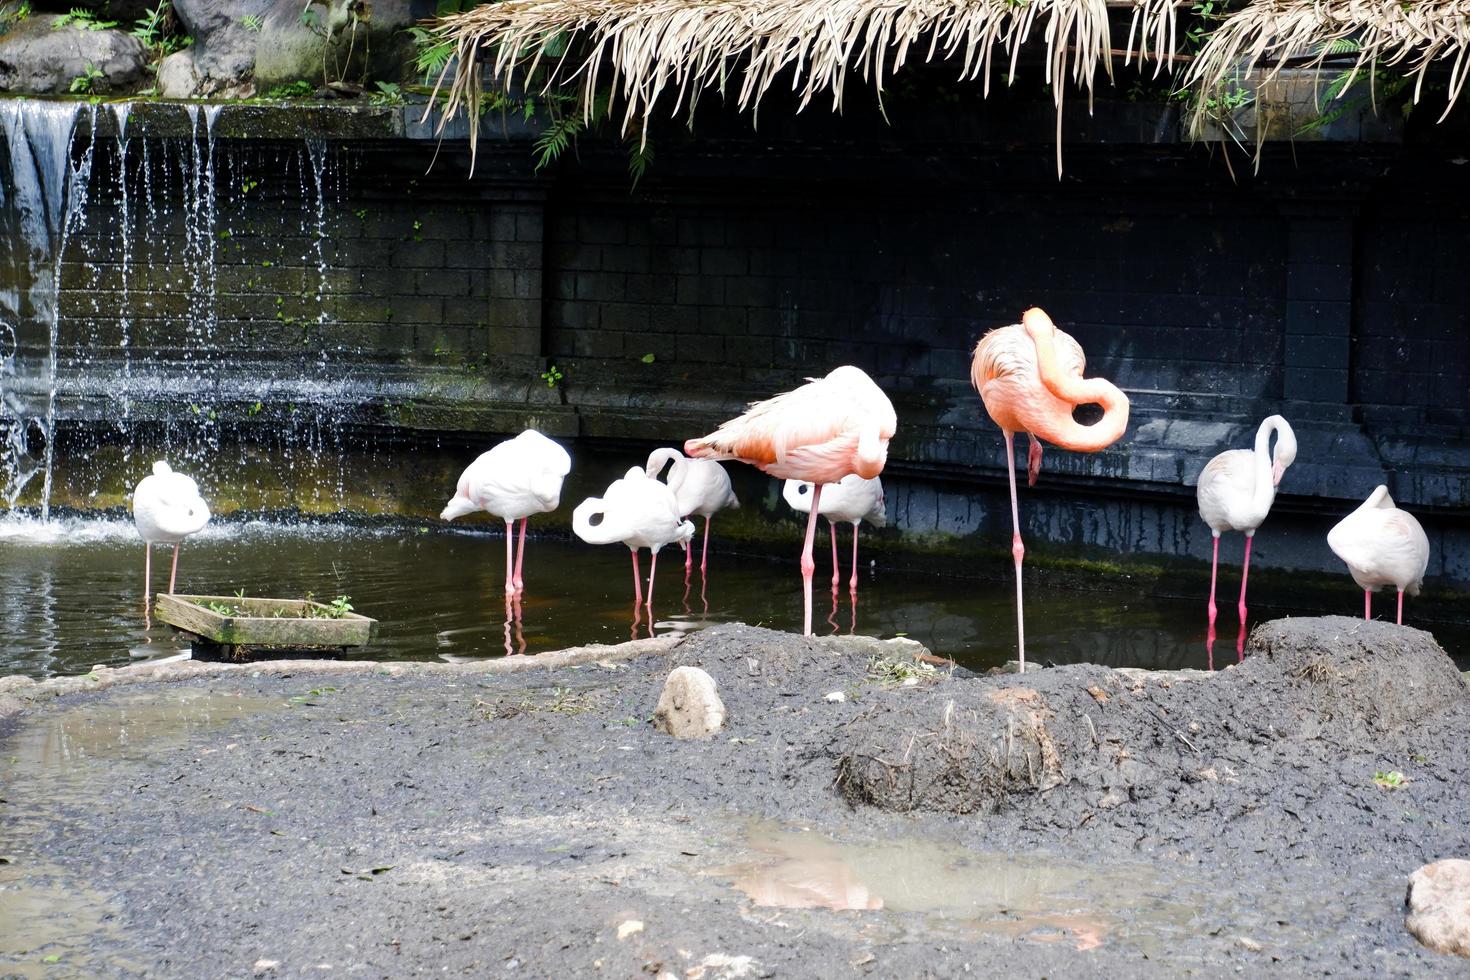 de flamingo's staand Aan de rotsen waren schoonmaak hun veren. foto